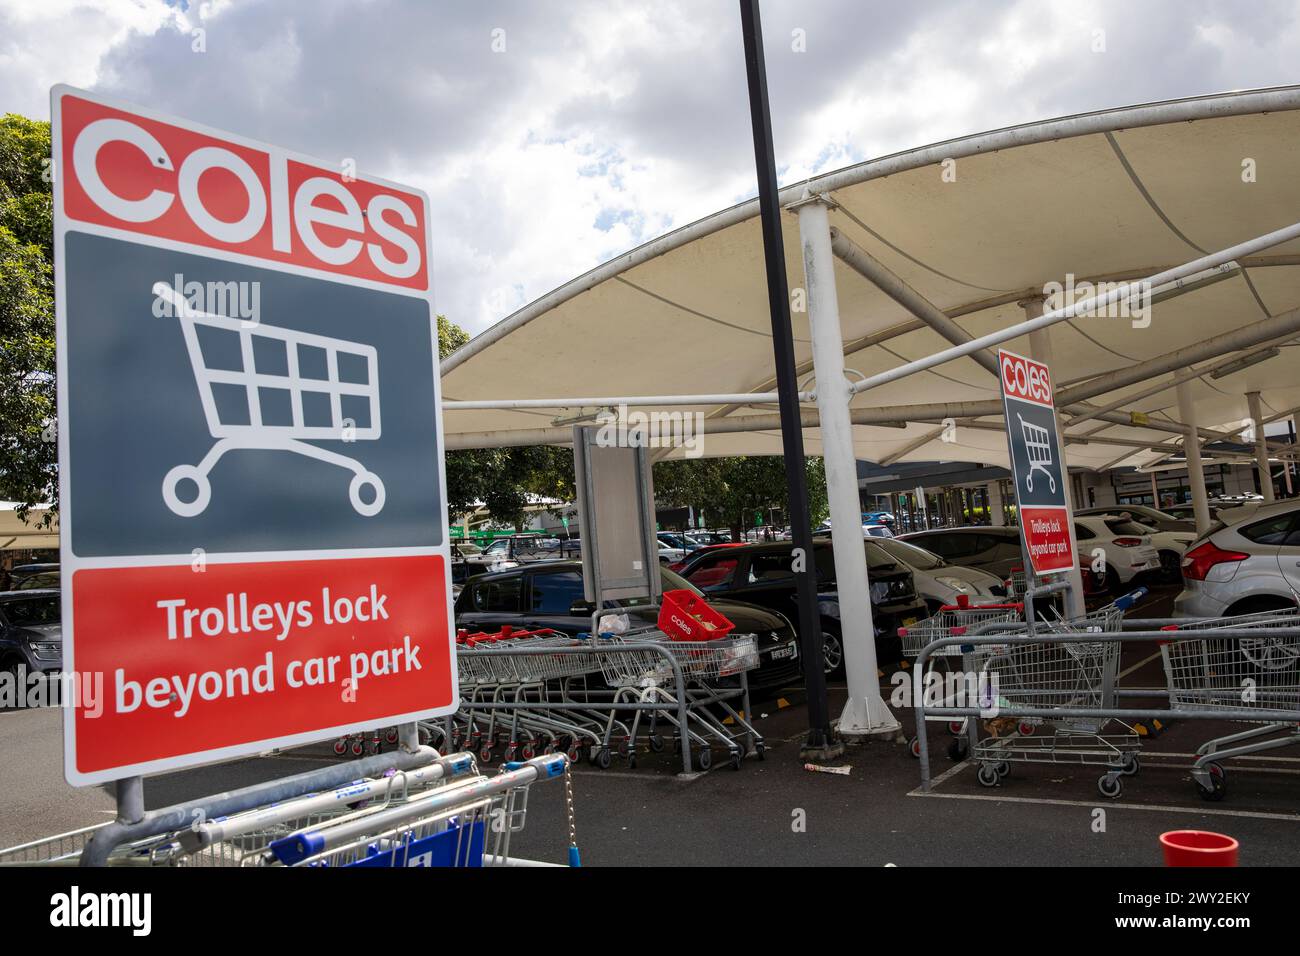 Coles Supermarkt in Australien hat Coles Technologie implementiert, um die Räder von Supermarktwagen zu sperren, wenn sie den Parkplatz verlassen, um Diebstahl zu vermeiden Stockfoto